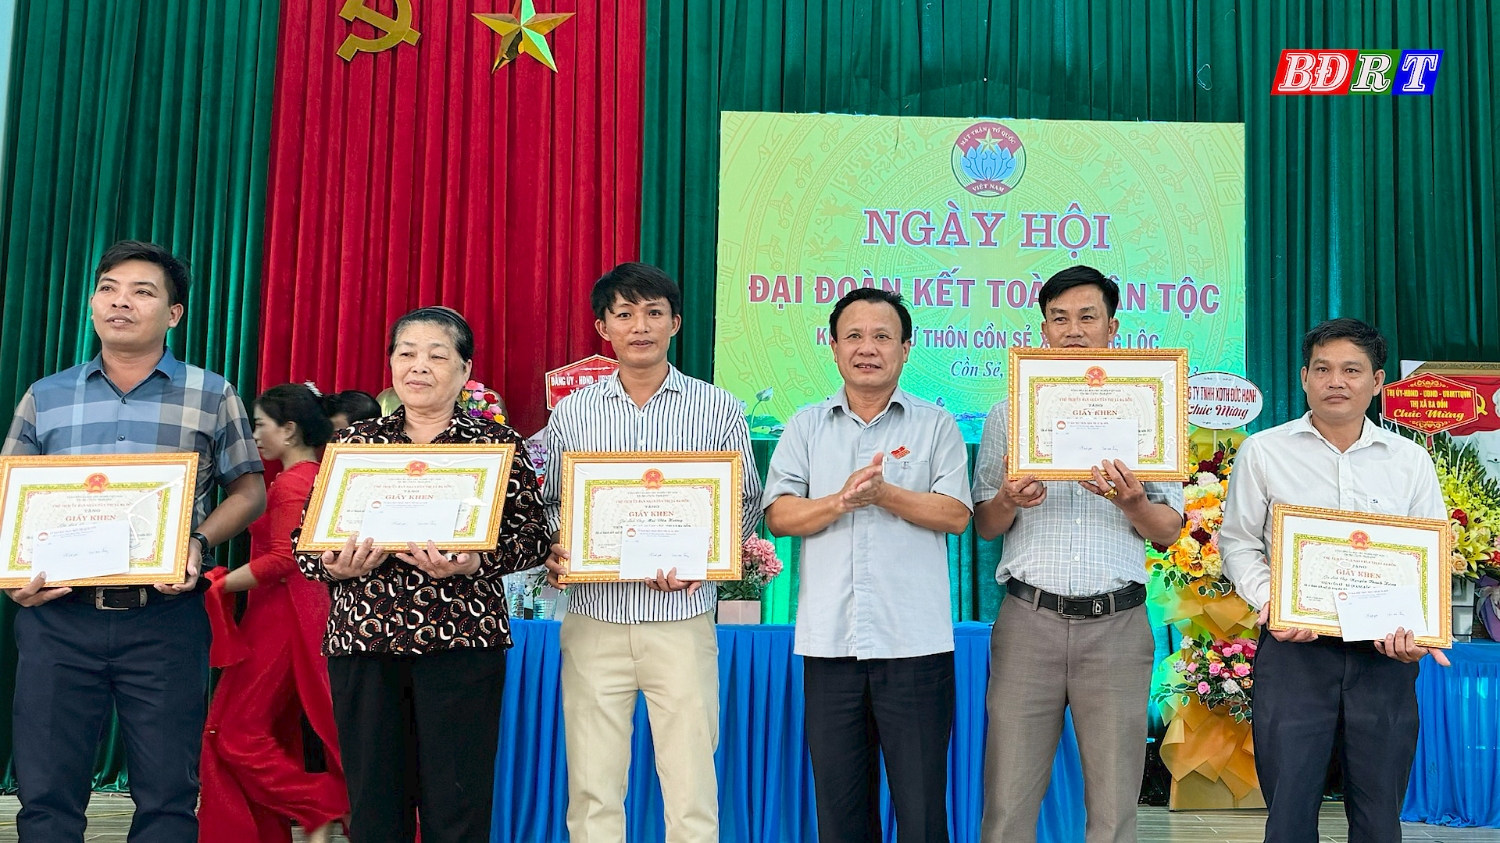 Đồng chí Phạm Duy Quang cũng đã trao giấy khen biểu dương 05 hộ gia đình văn hóa tiêu biểu thôn Cồn Sẻ